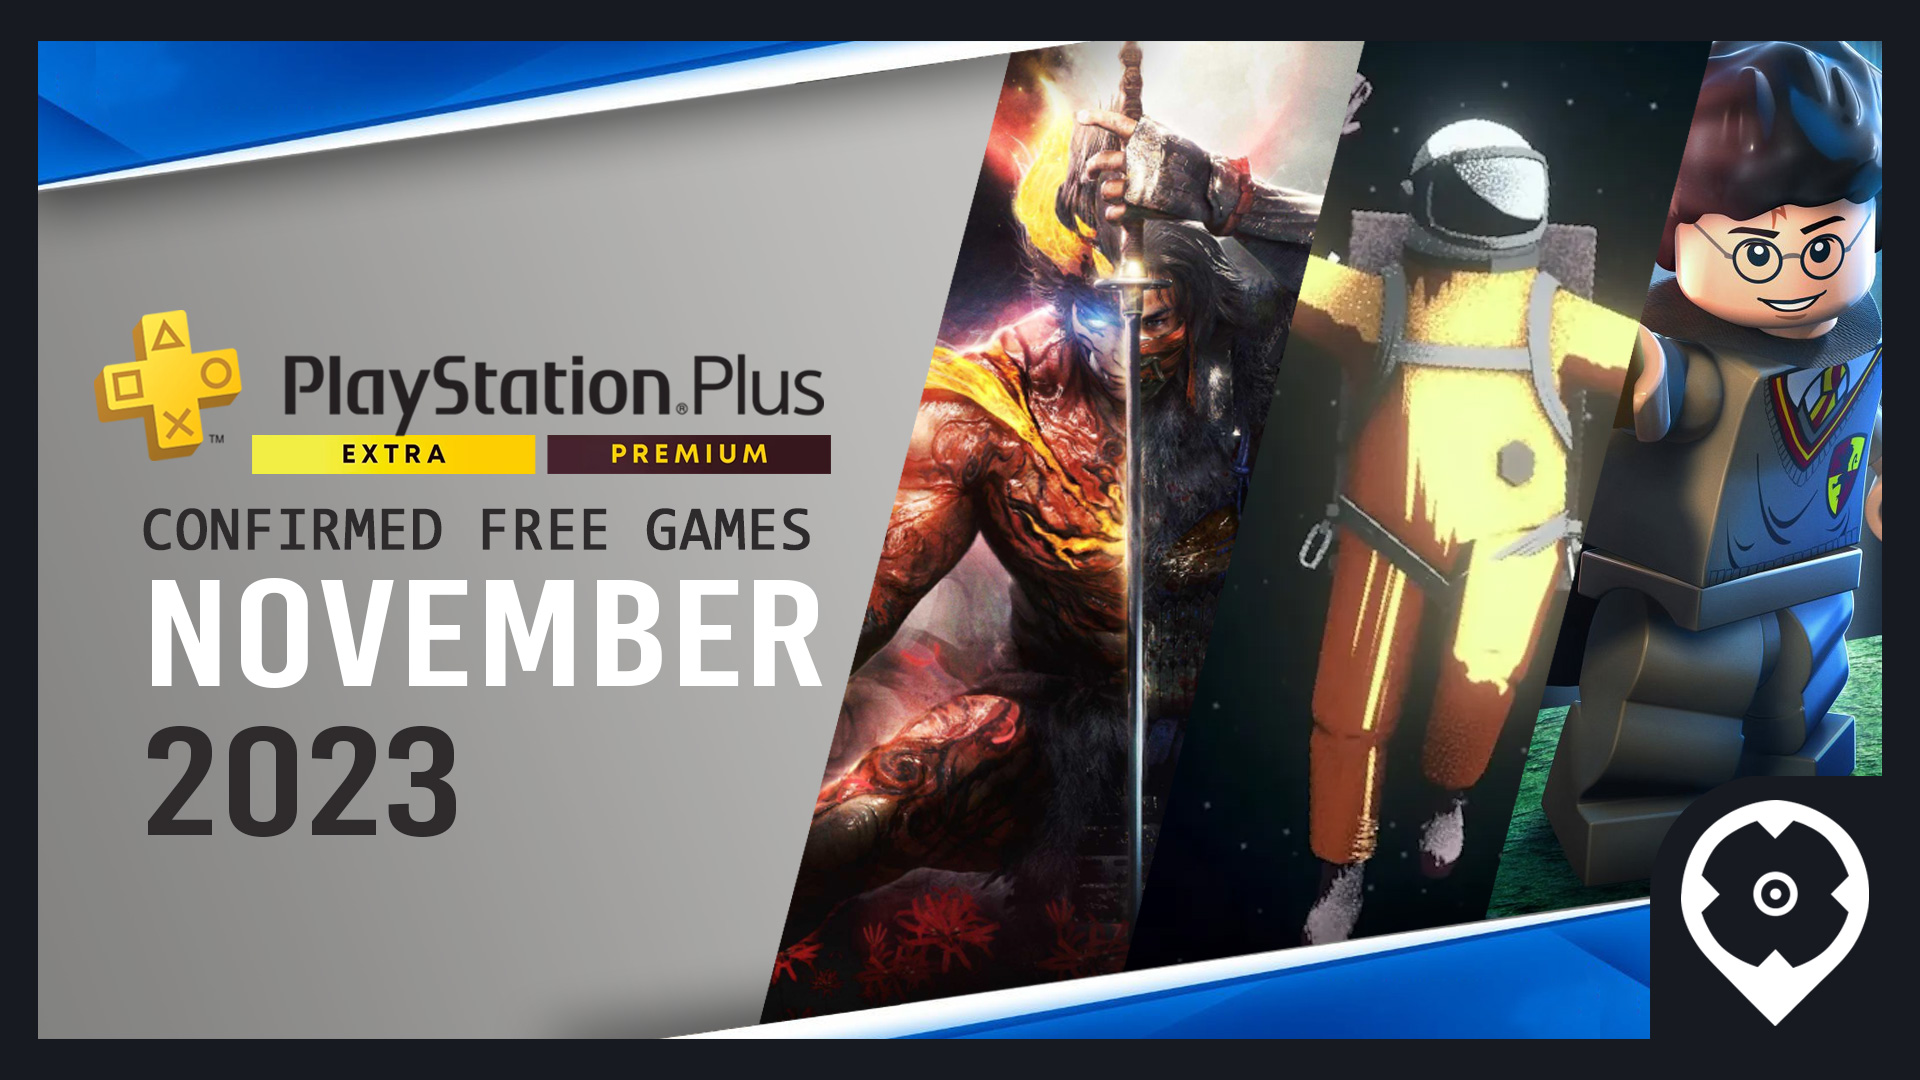 Jogos PS Plus Extra e Premium de julho já disponíveis